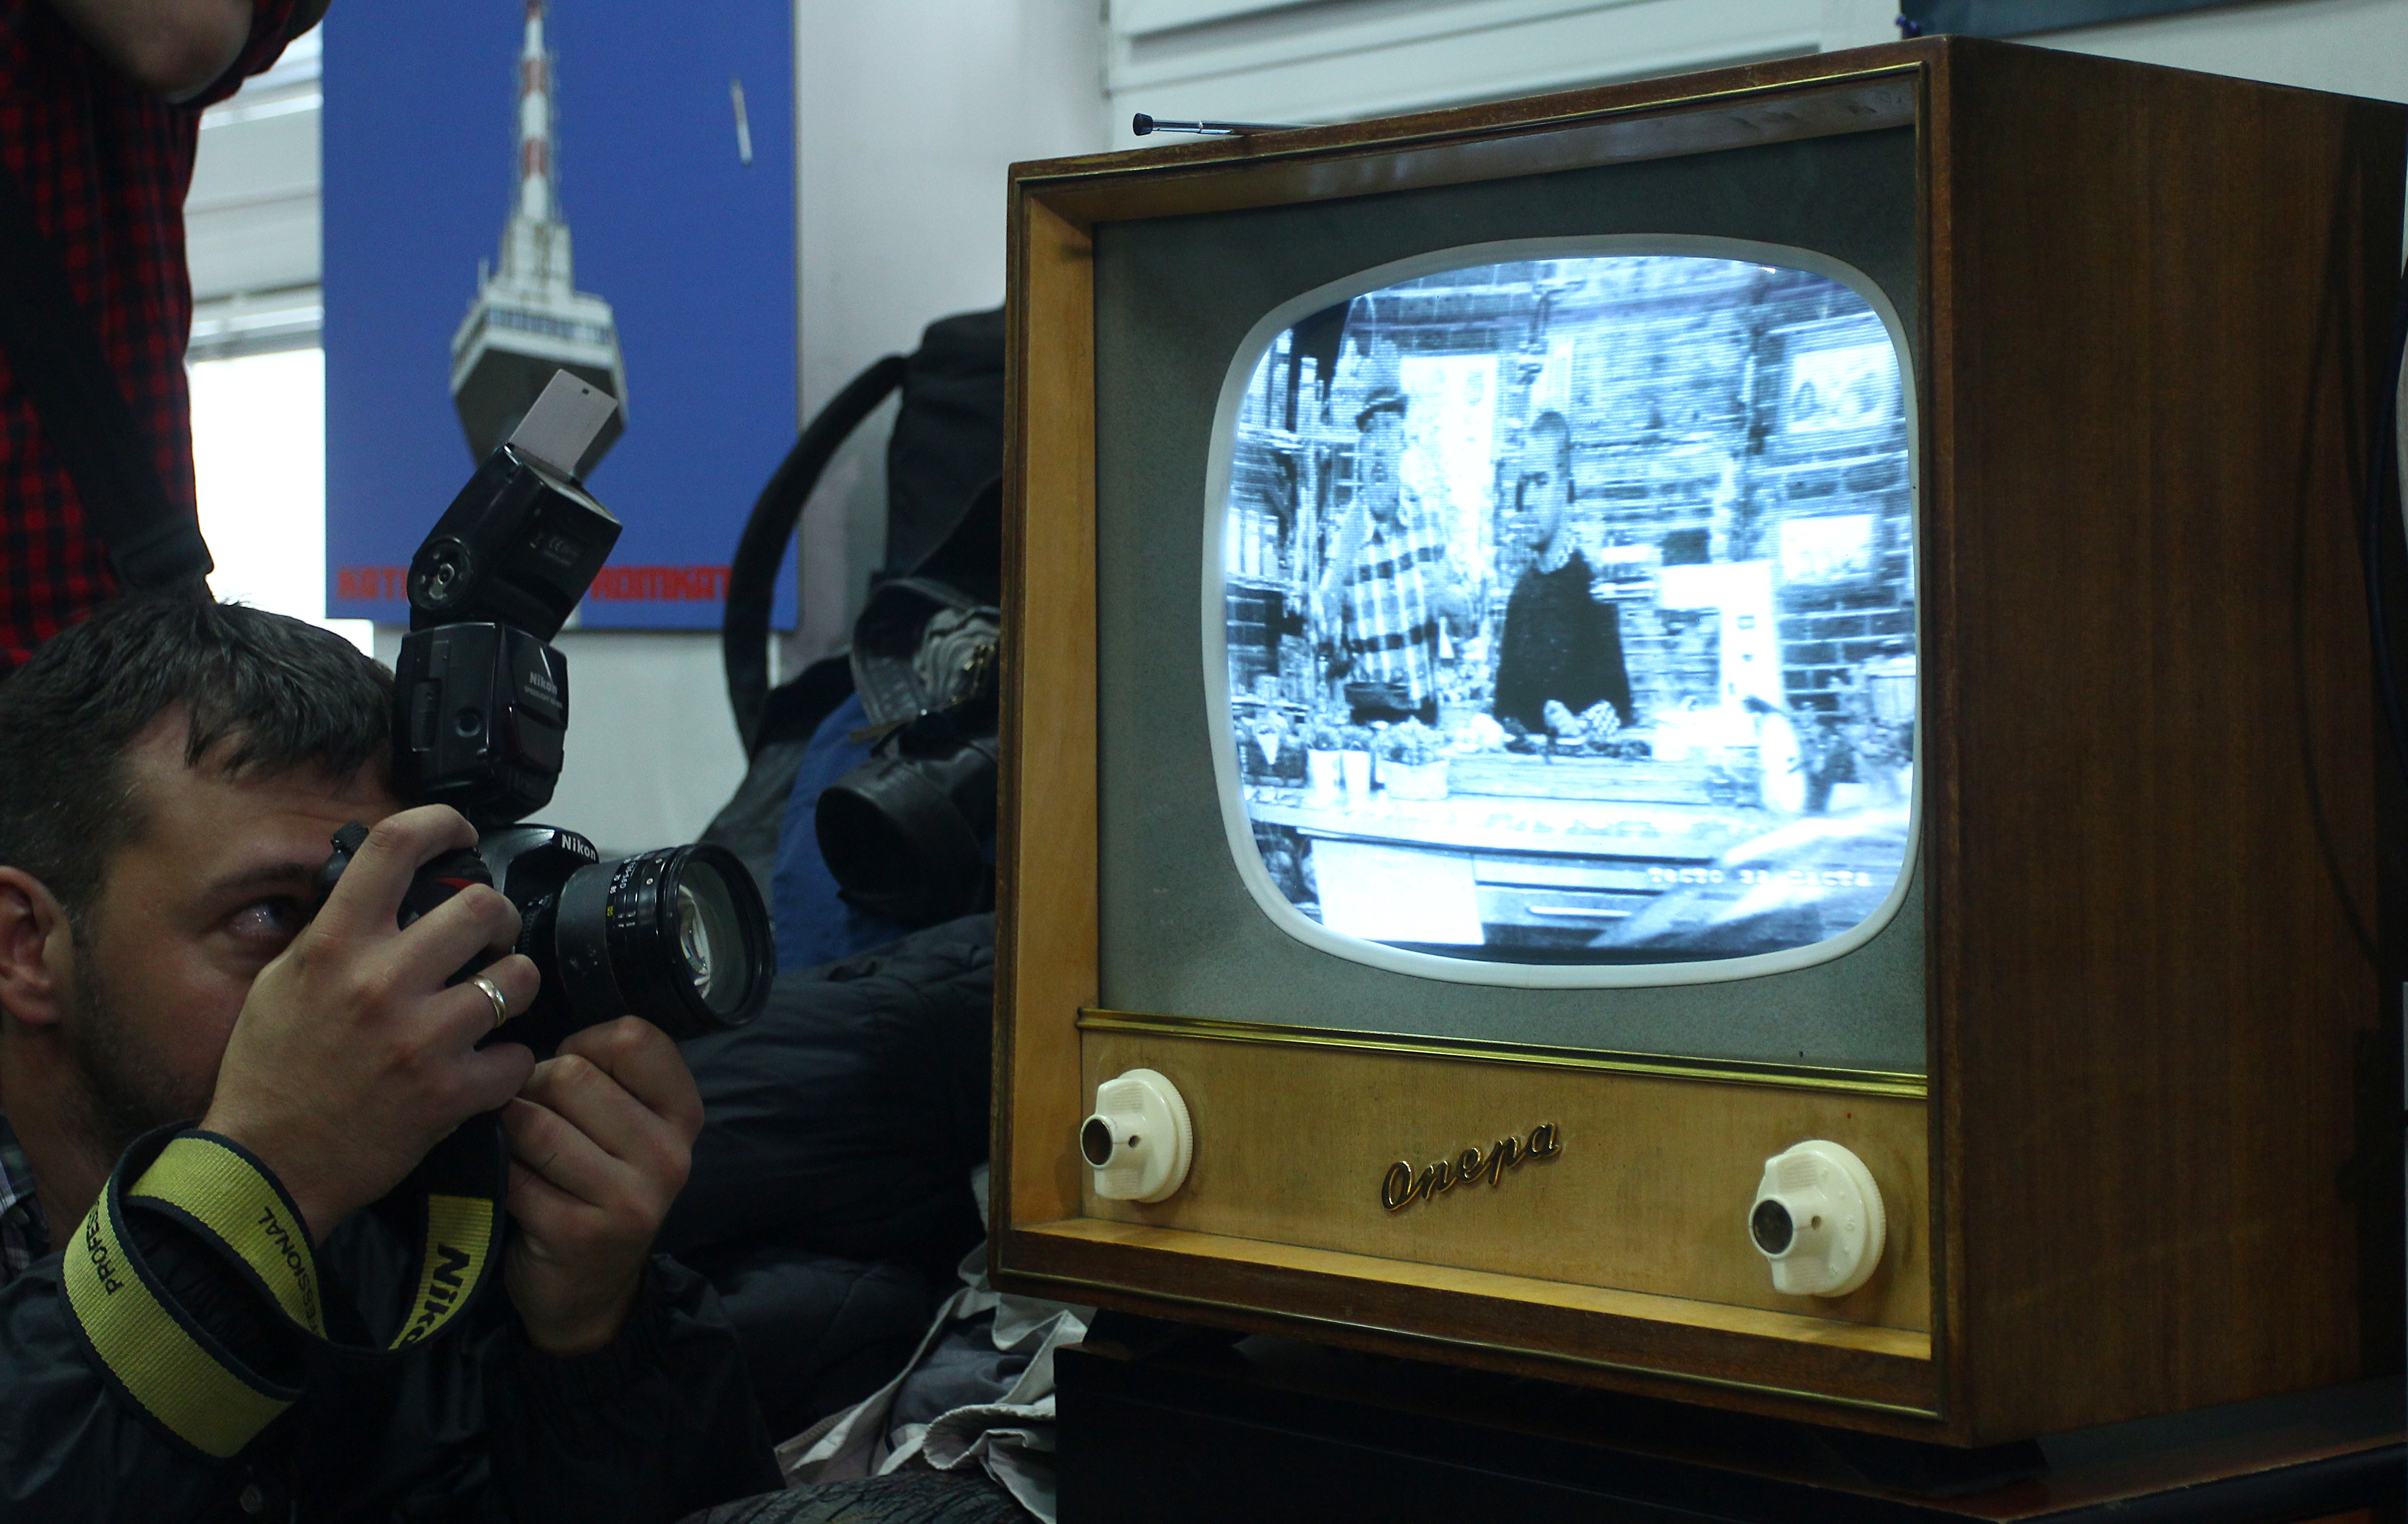 Цифрова телевизия може да се гледа и на най-старите телевизори - като ”Опера”